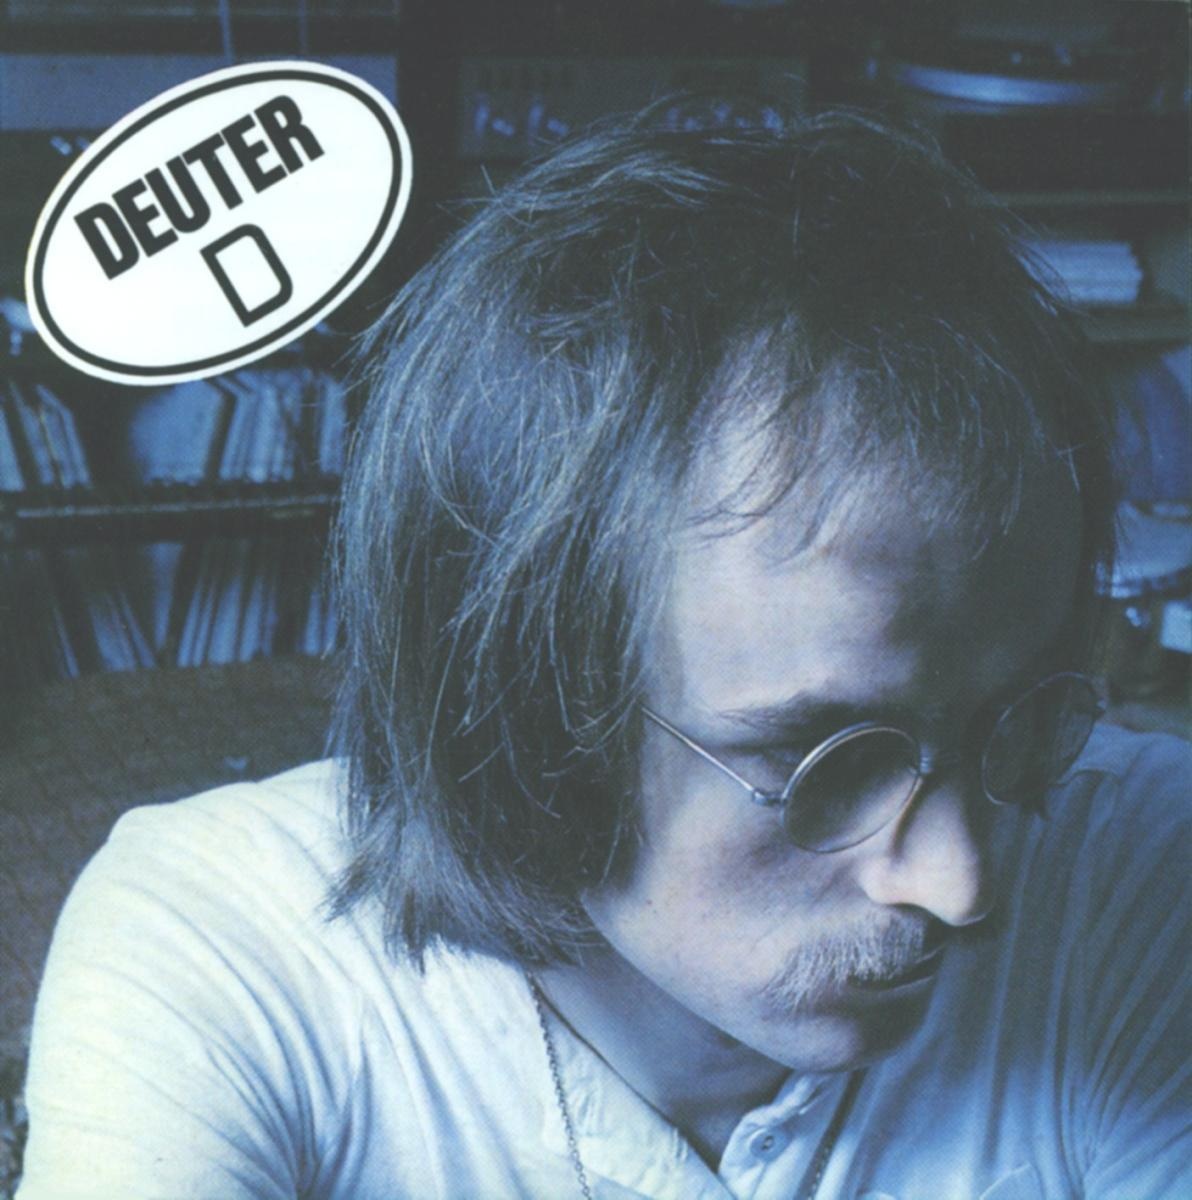 D - Deuter. (CD)